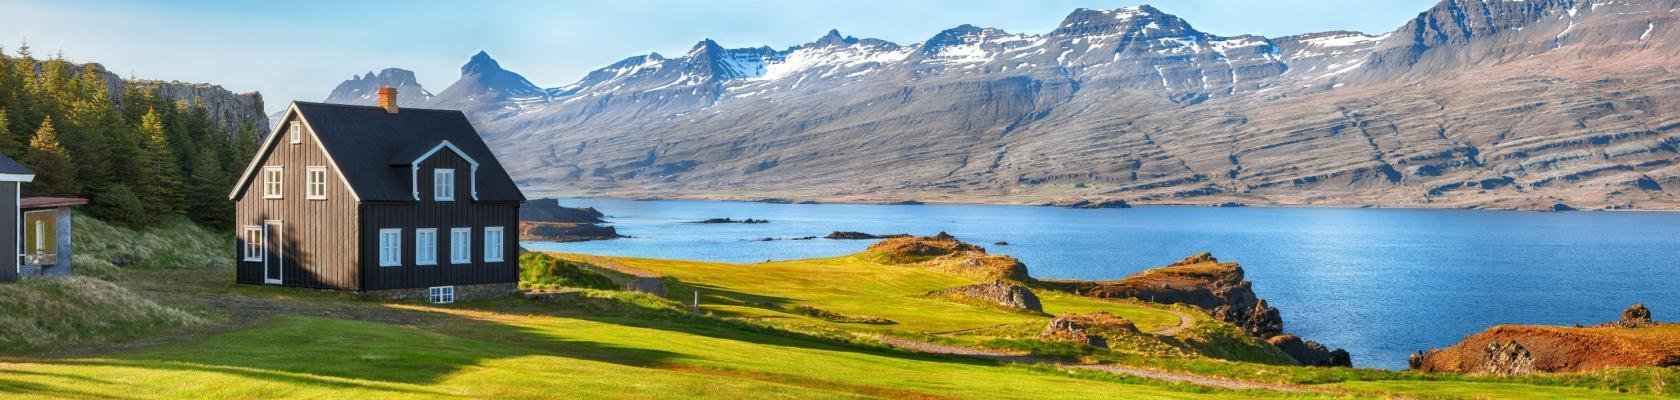 Berufjordur, Oost-IJsland